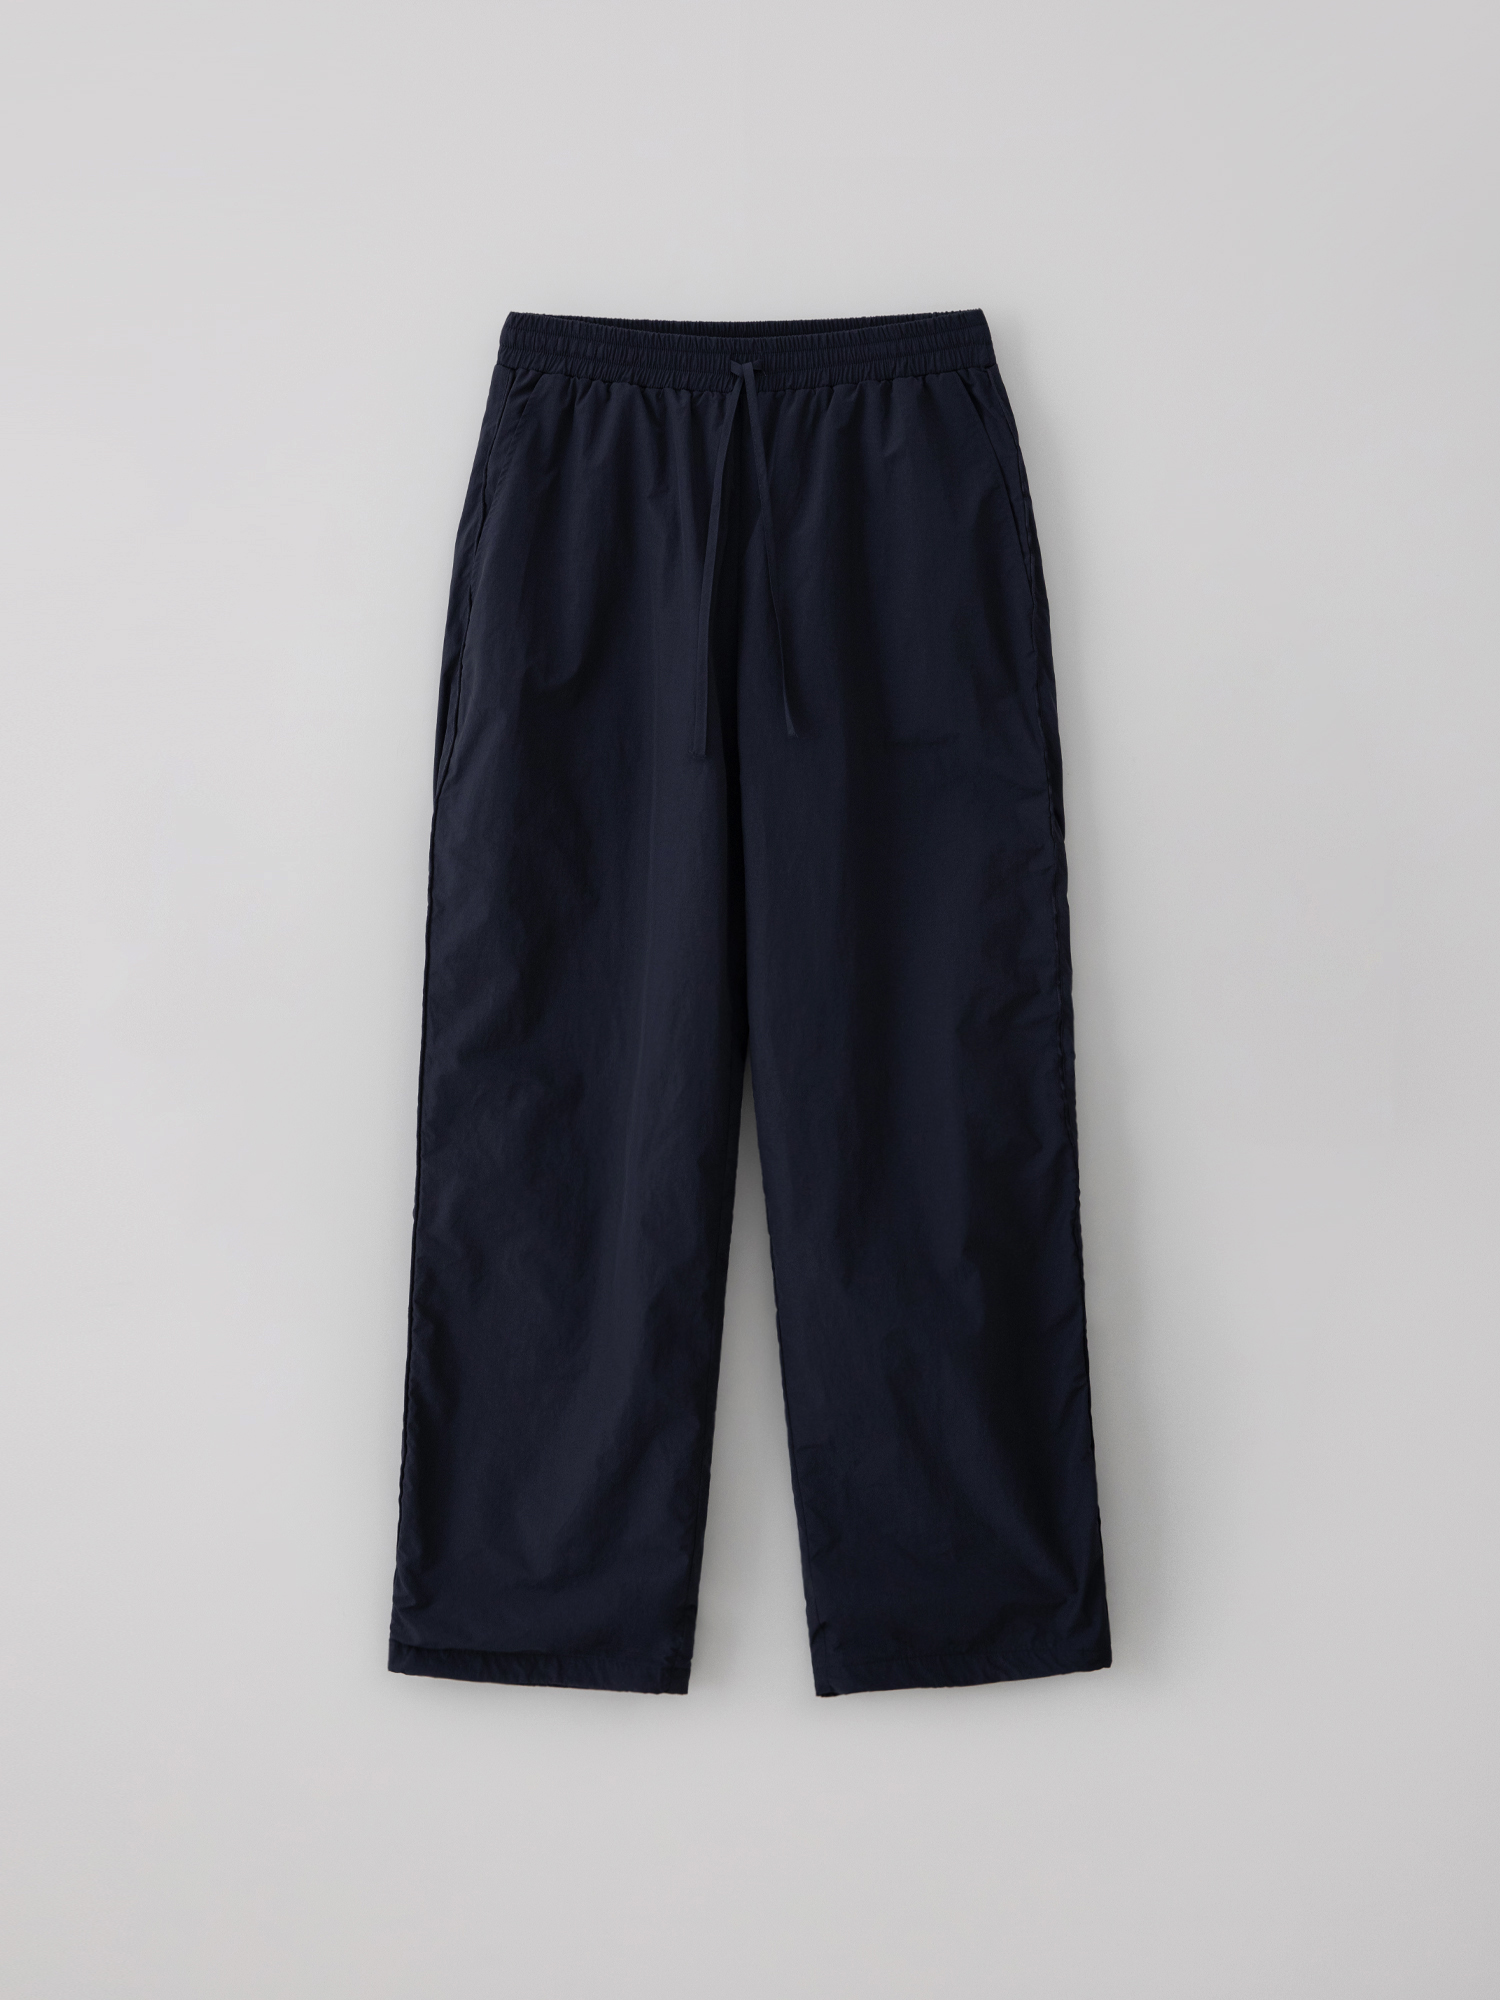 [2nd reorder] Parachute pants (navy)